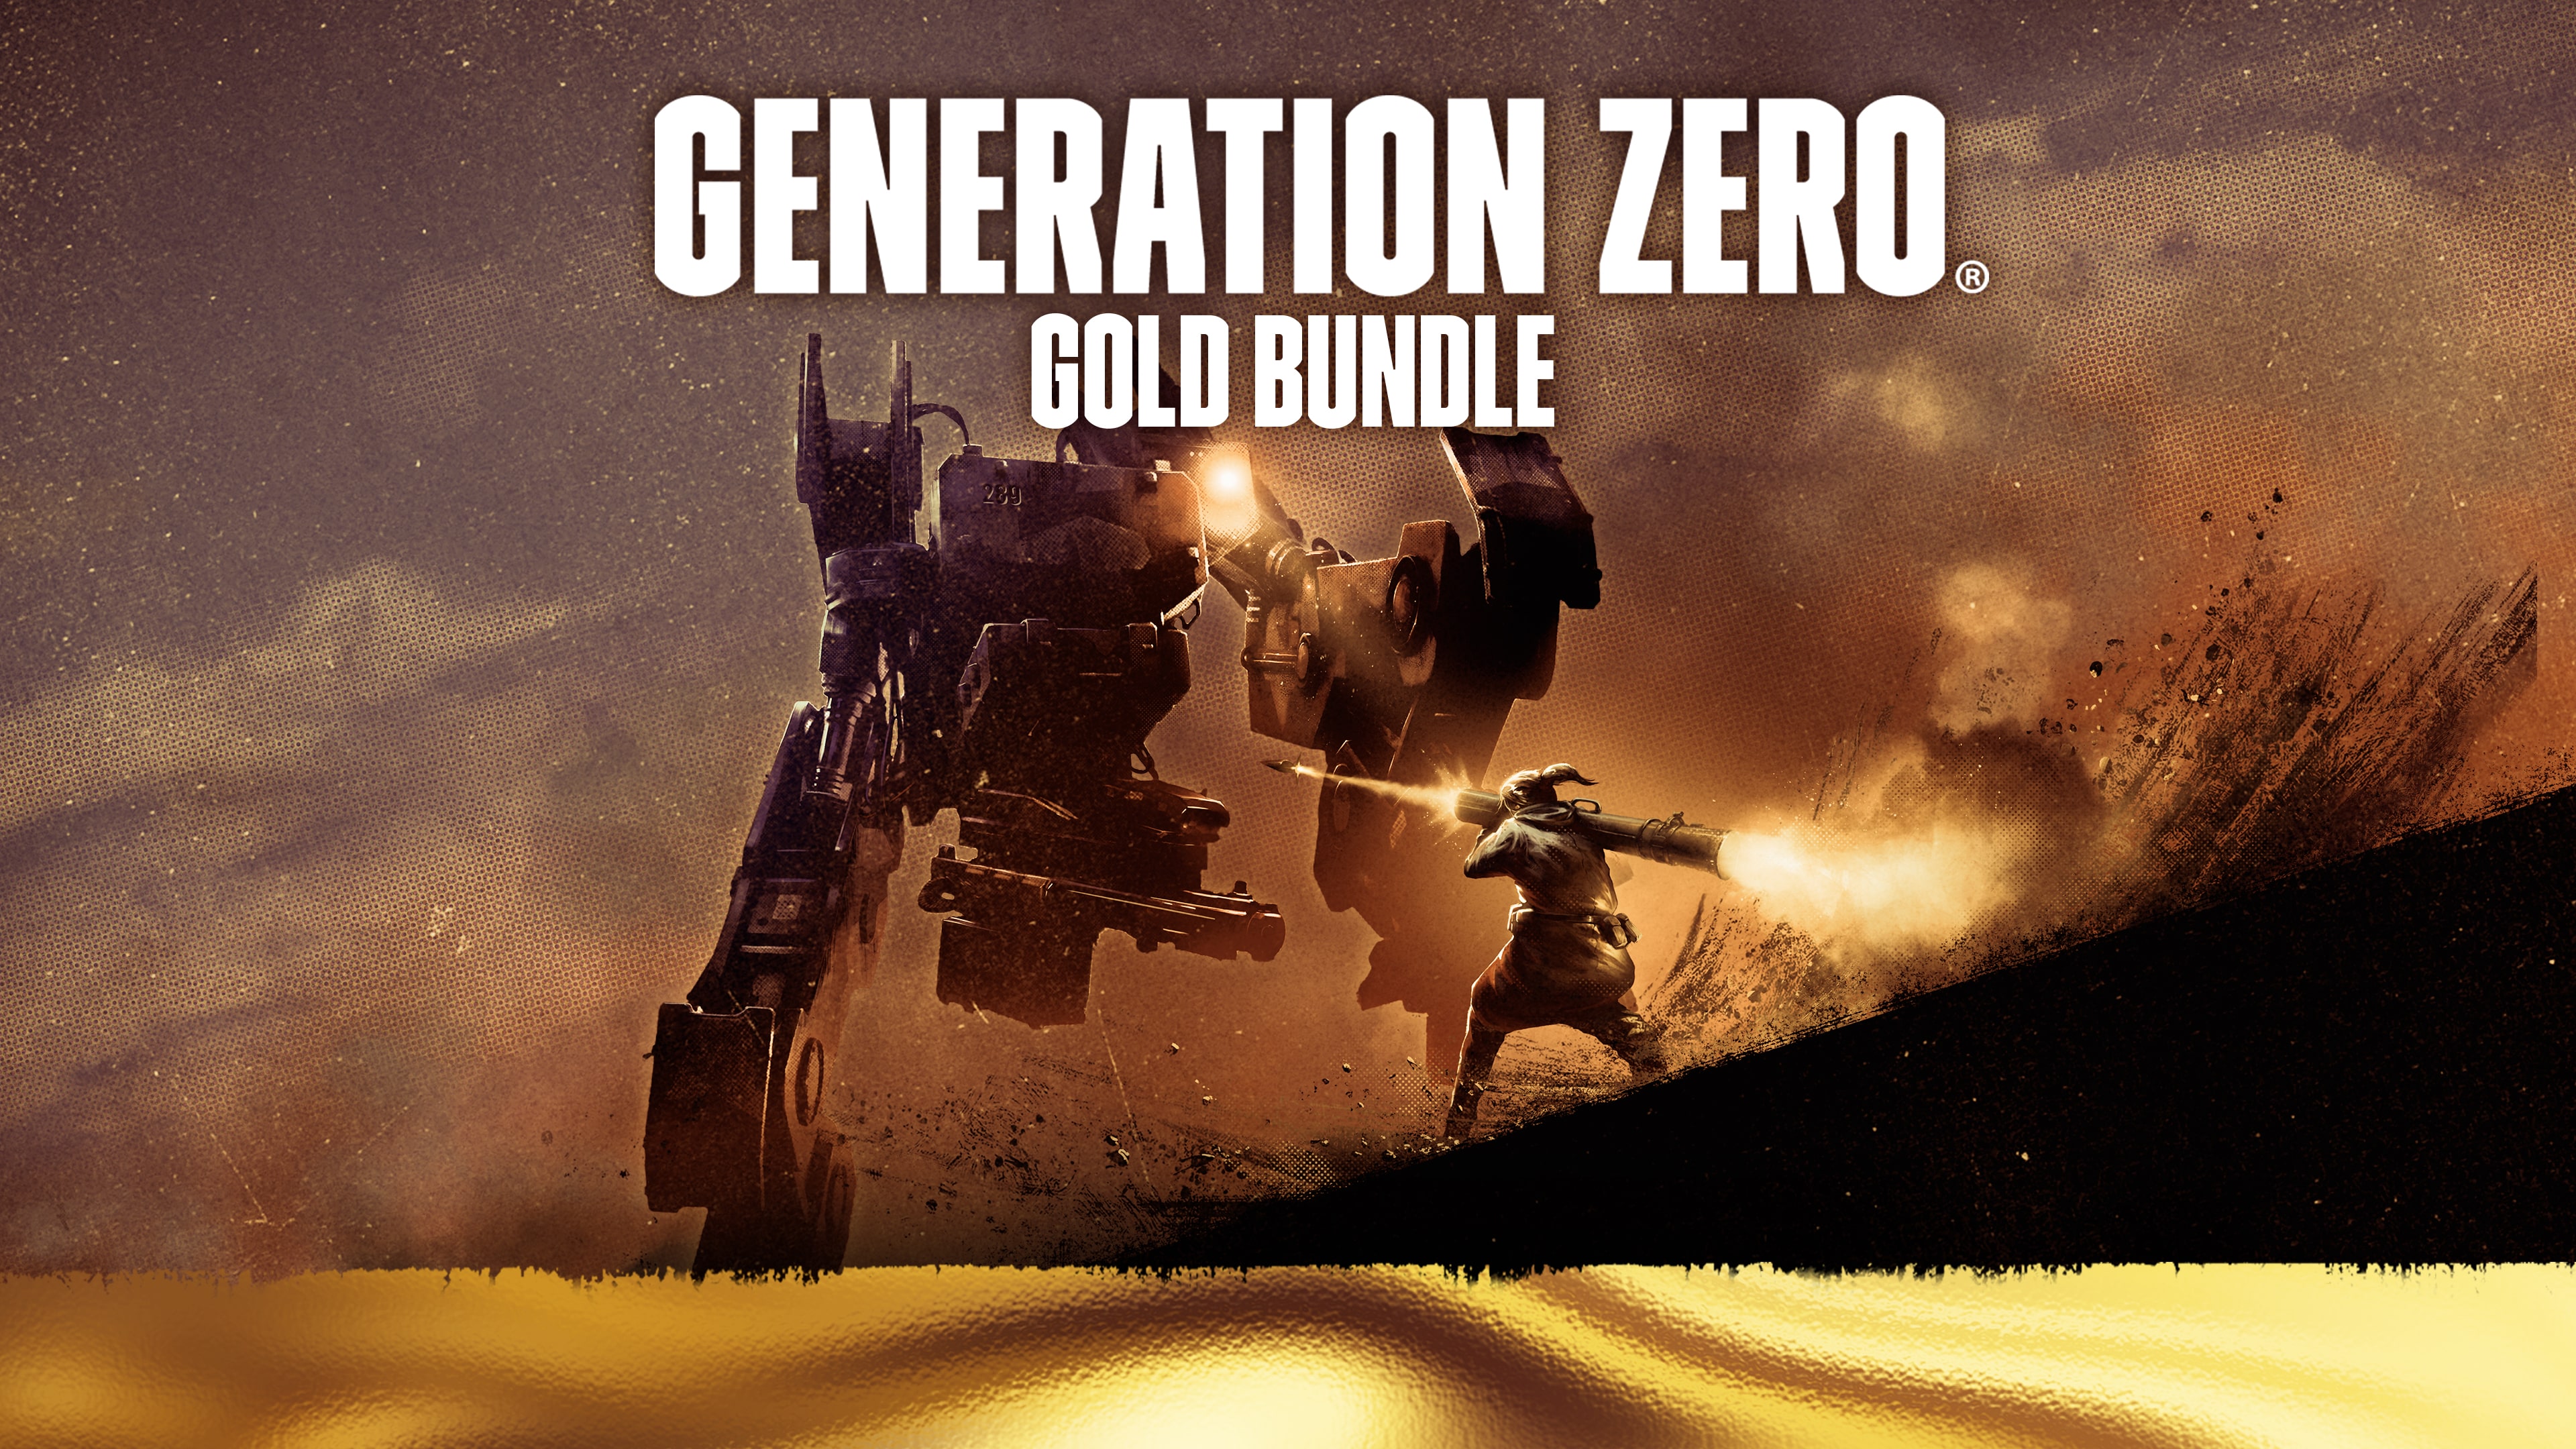 Generation Zero ® - Gold Bundle